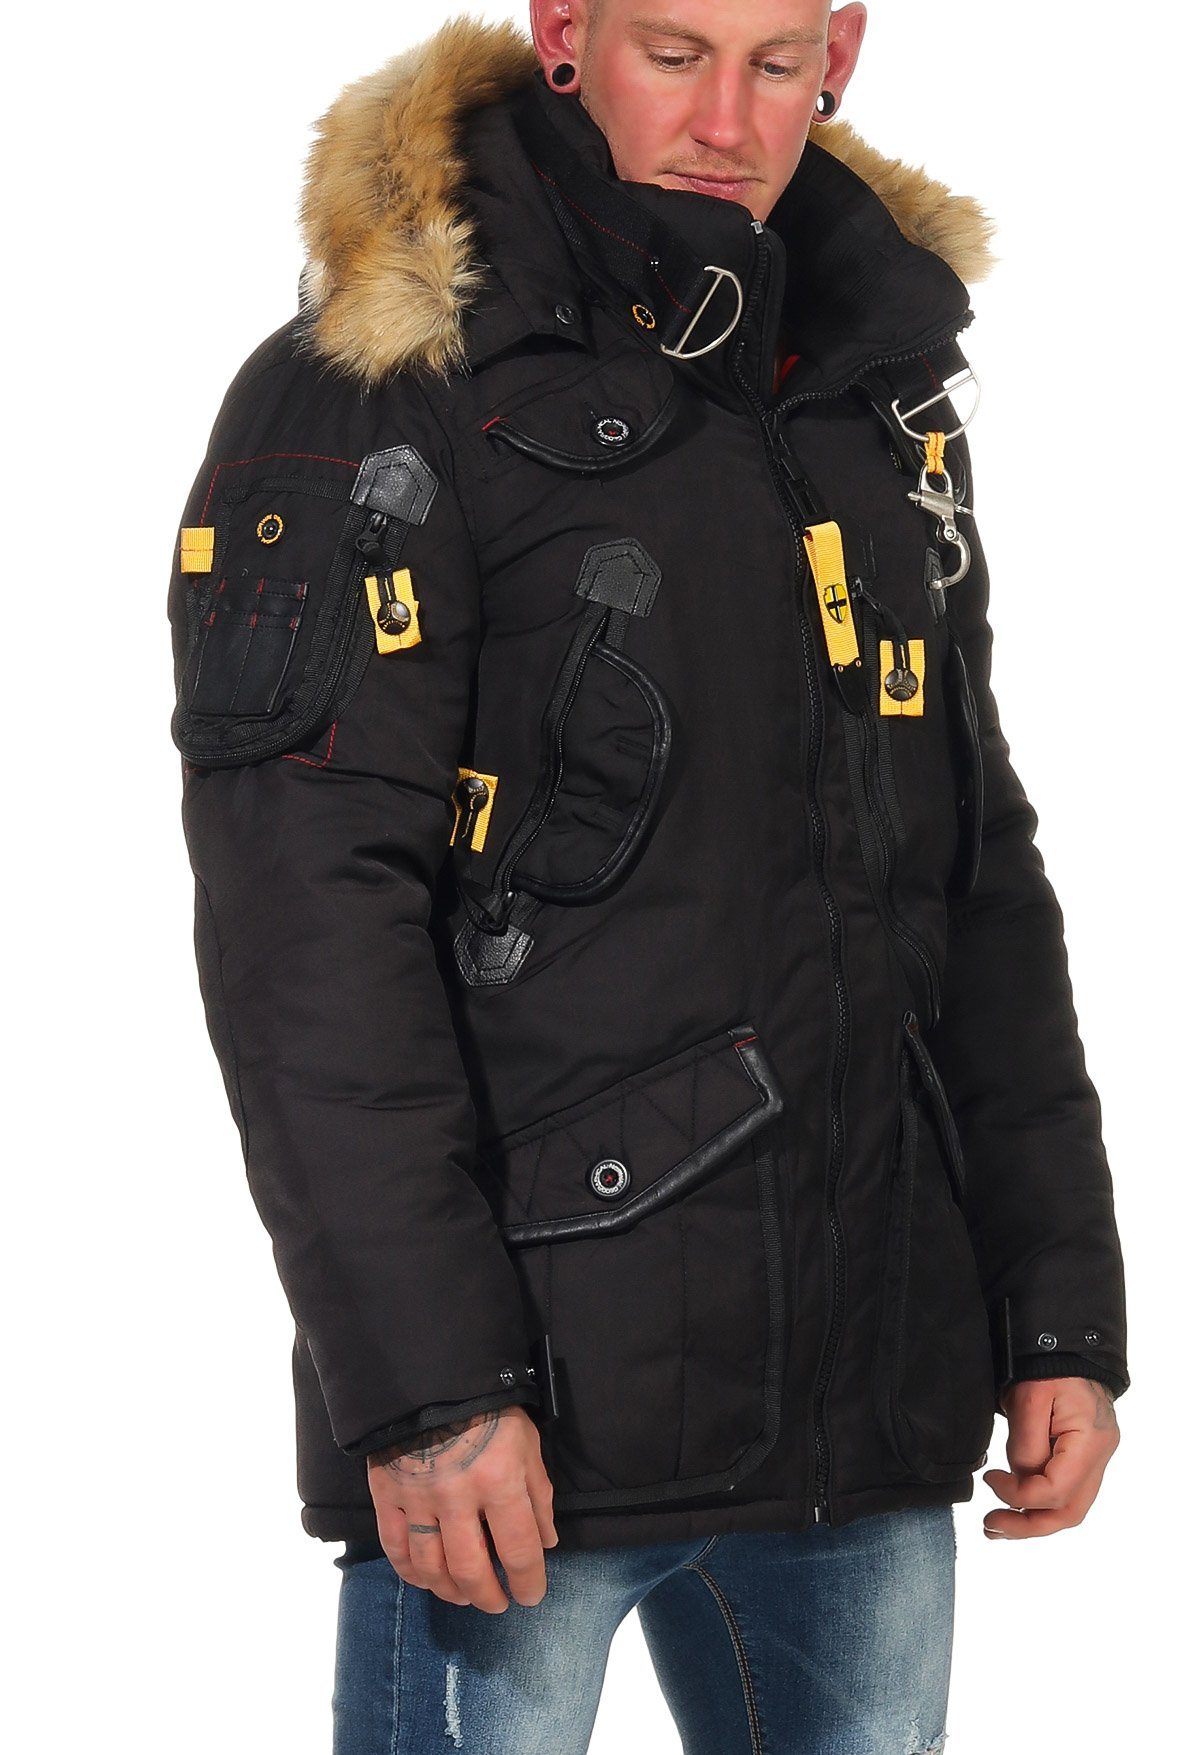 Schwarz Agaros Kapuze Winterjacke individuell viele Fellbesatz: Norway Taschen abnehmbar, beides mit Geographical